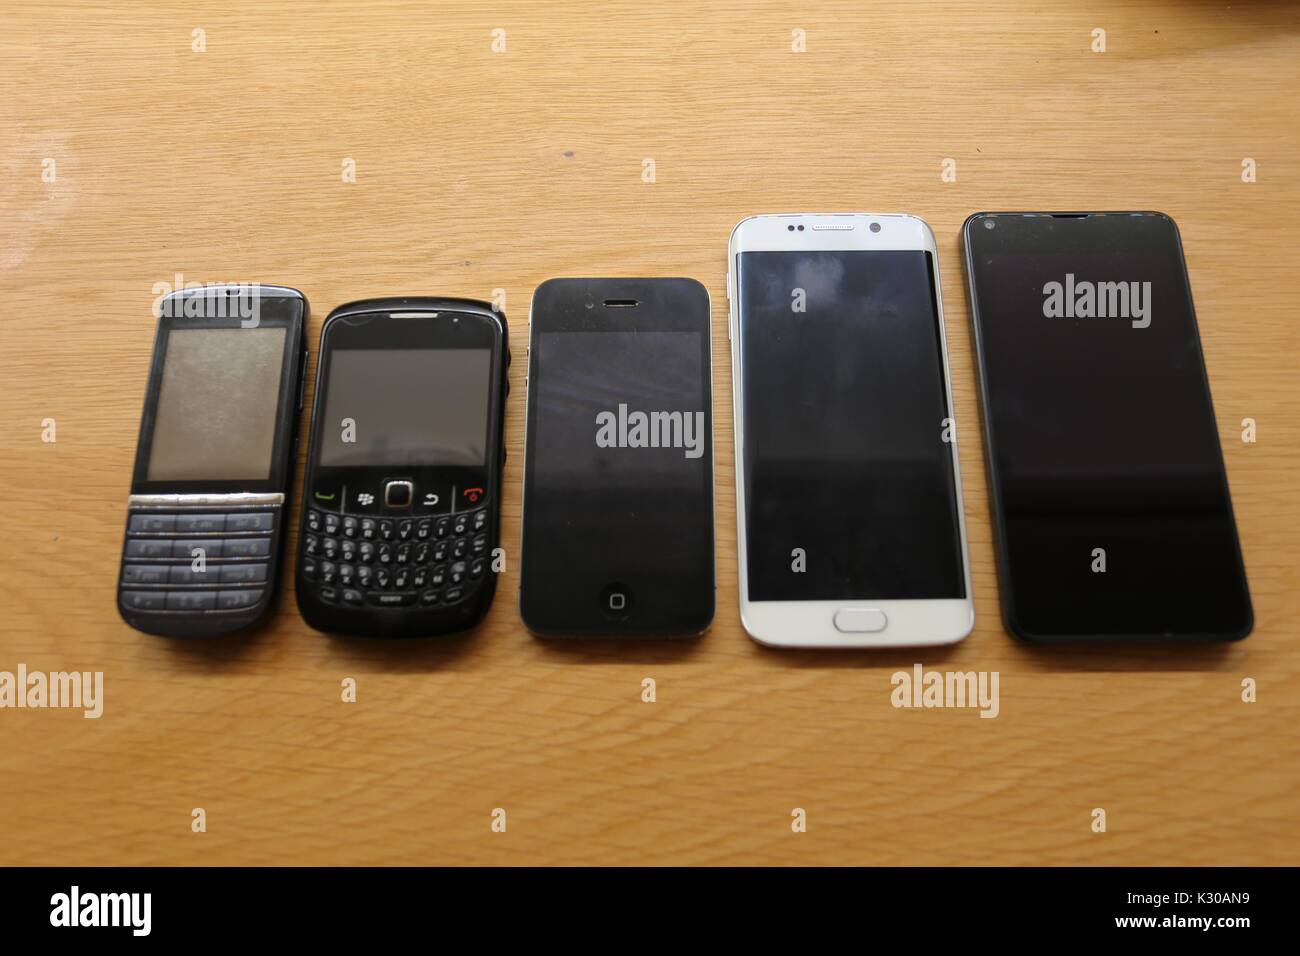 mobile phones Stock Photo